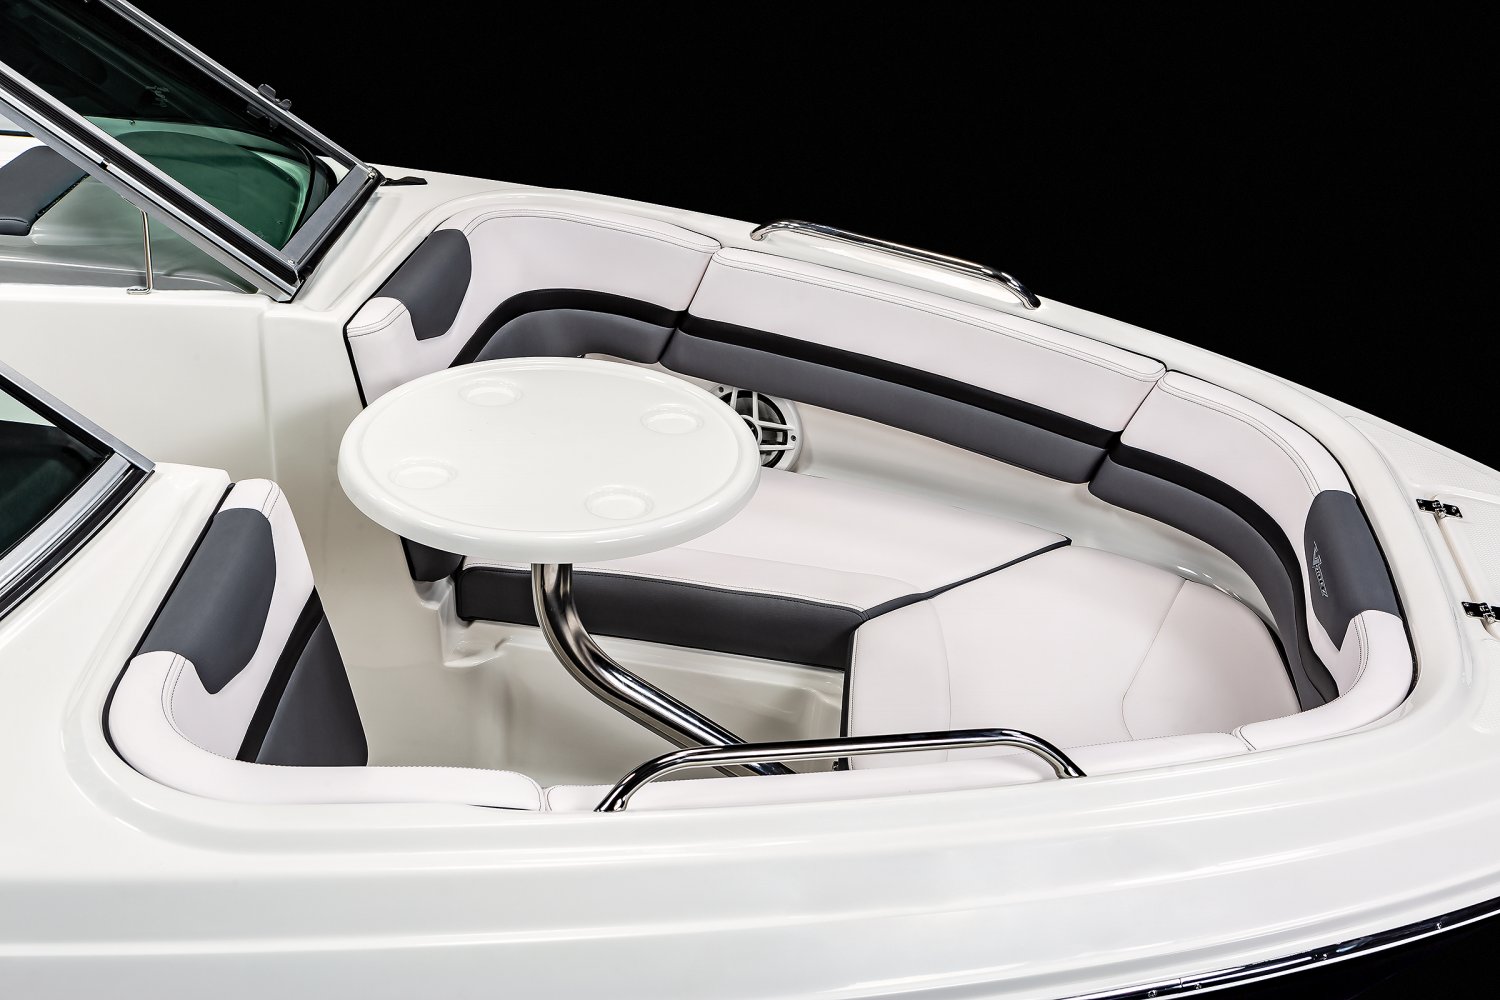 2021 203 Vortex Jet Boat - Features